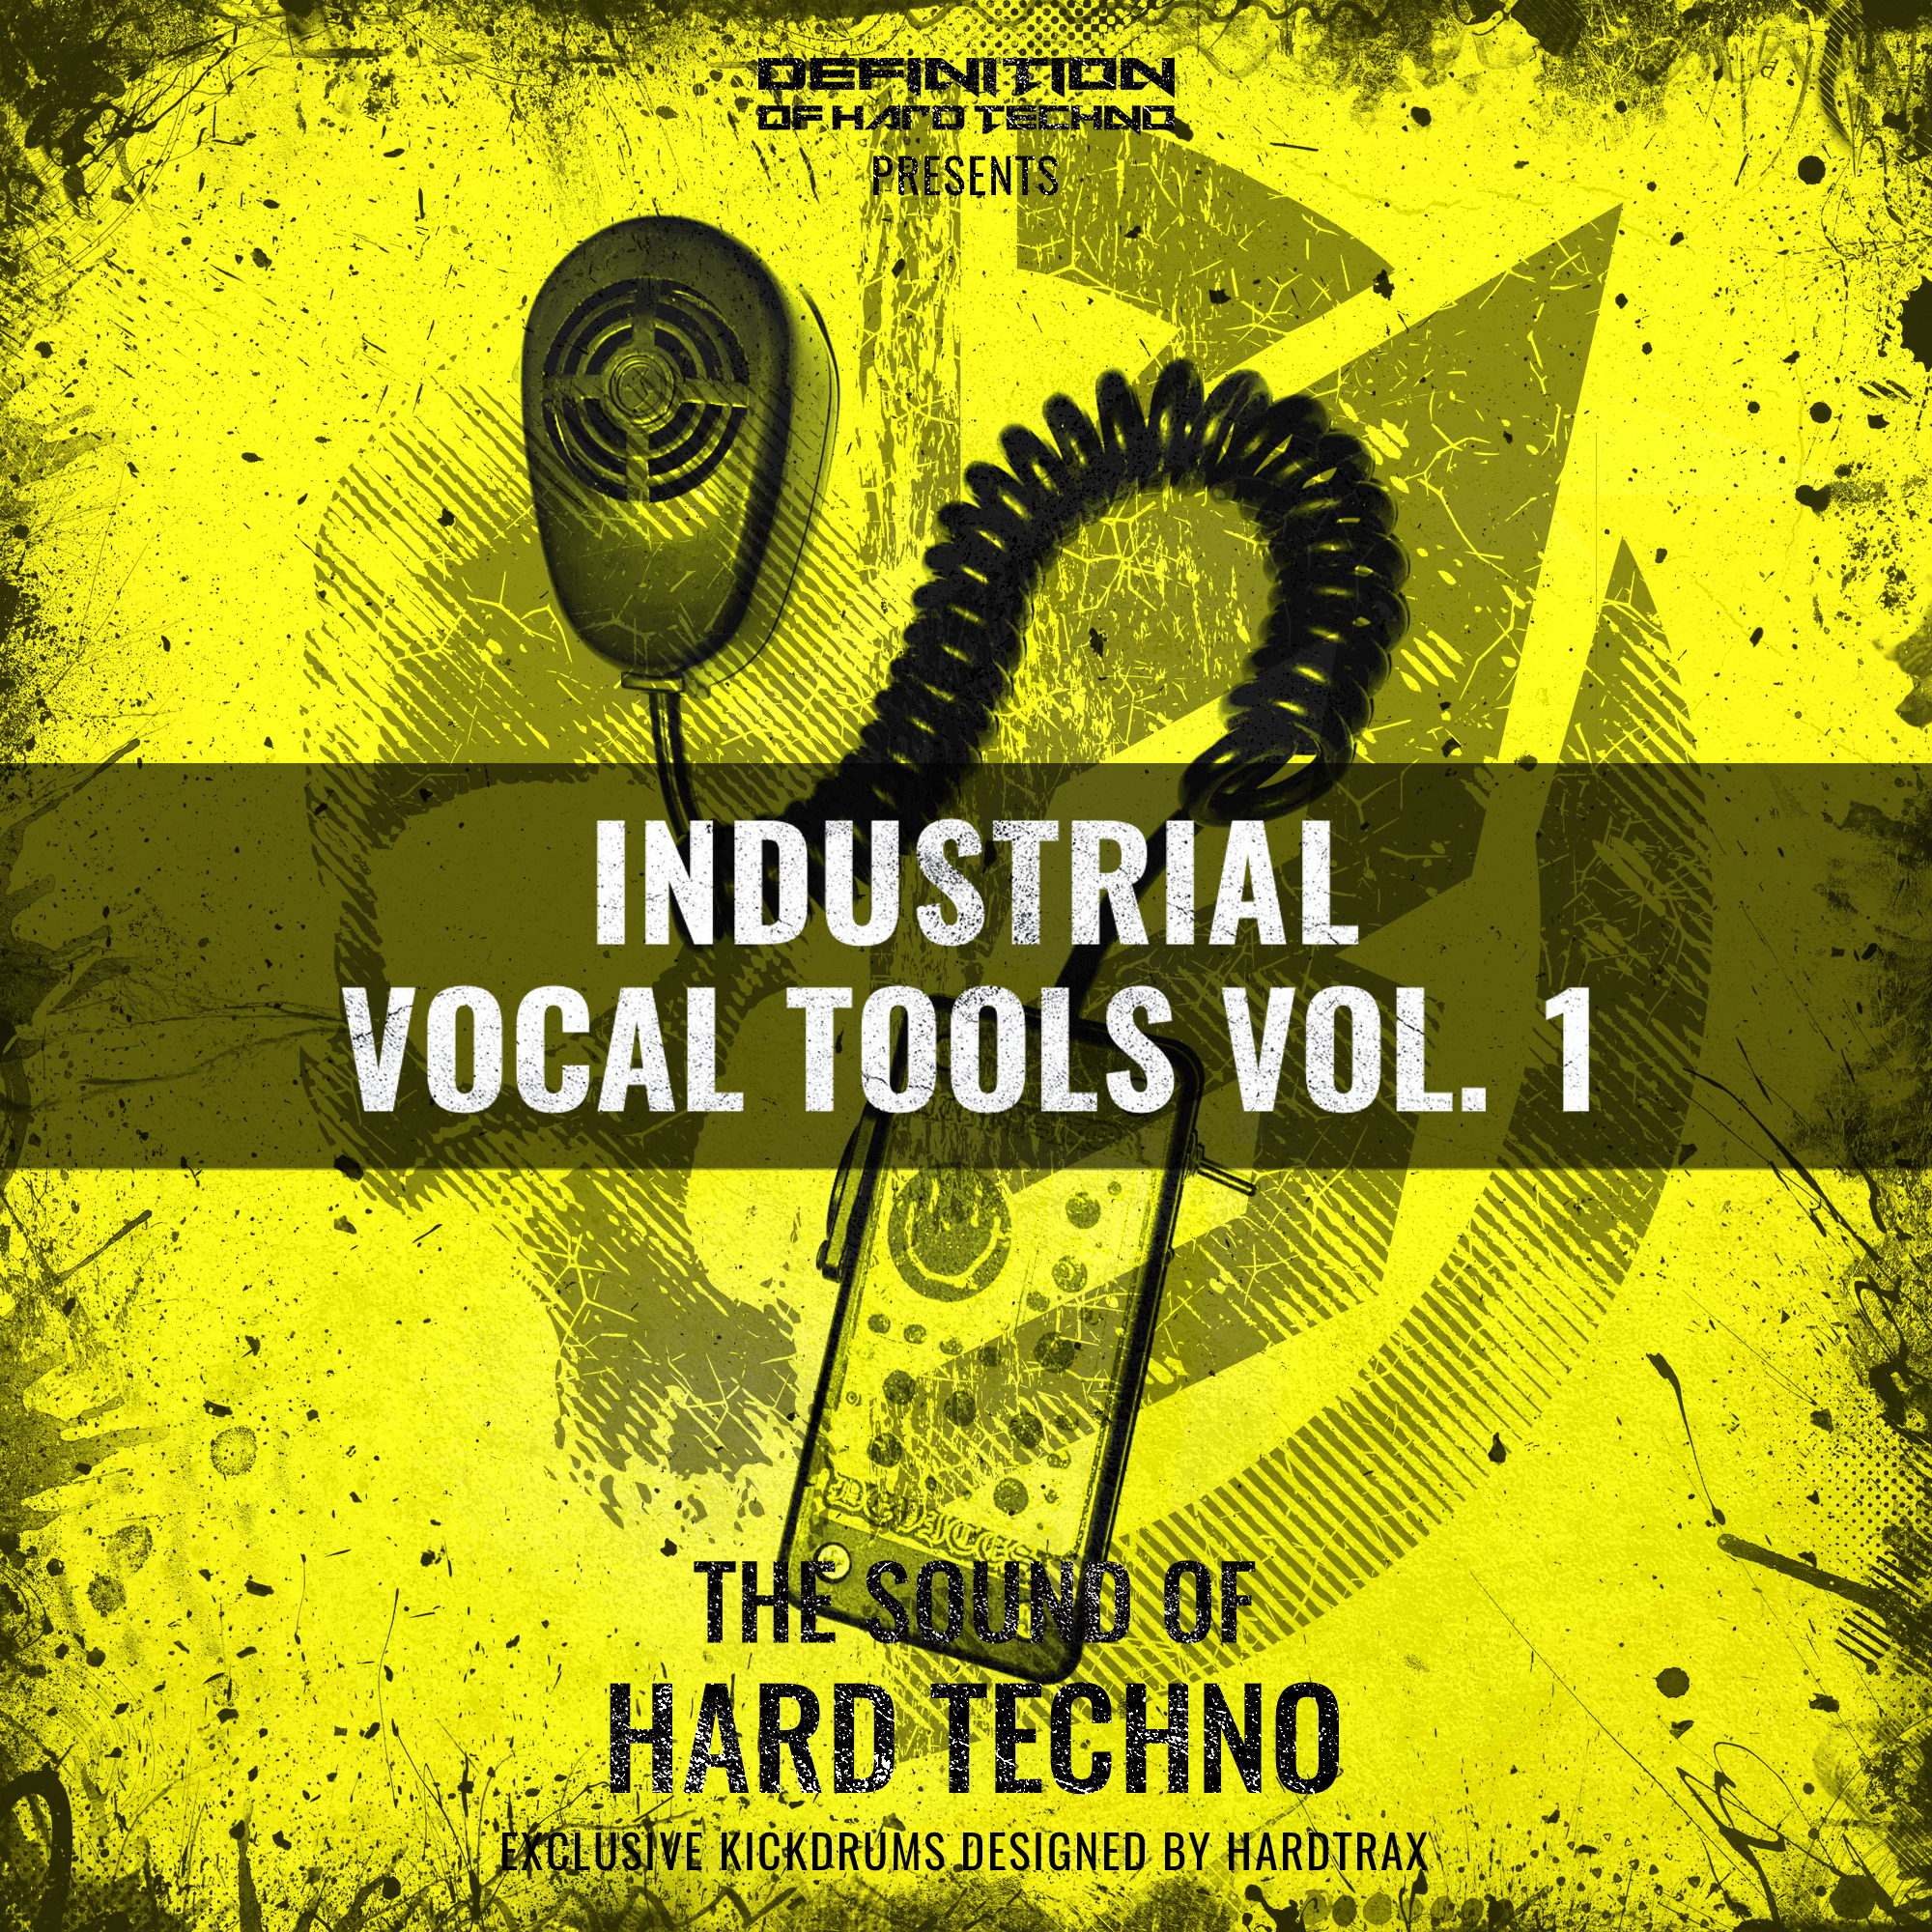 DOHT -  Industrial Vocal Tools Vol. 1